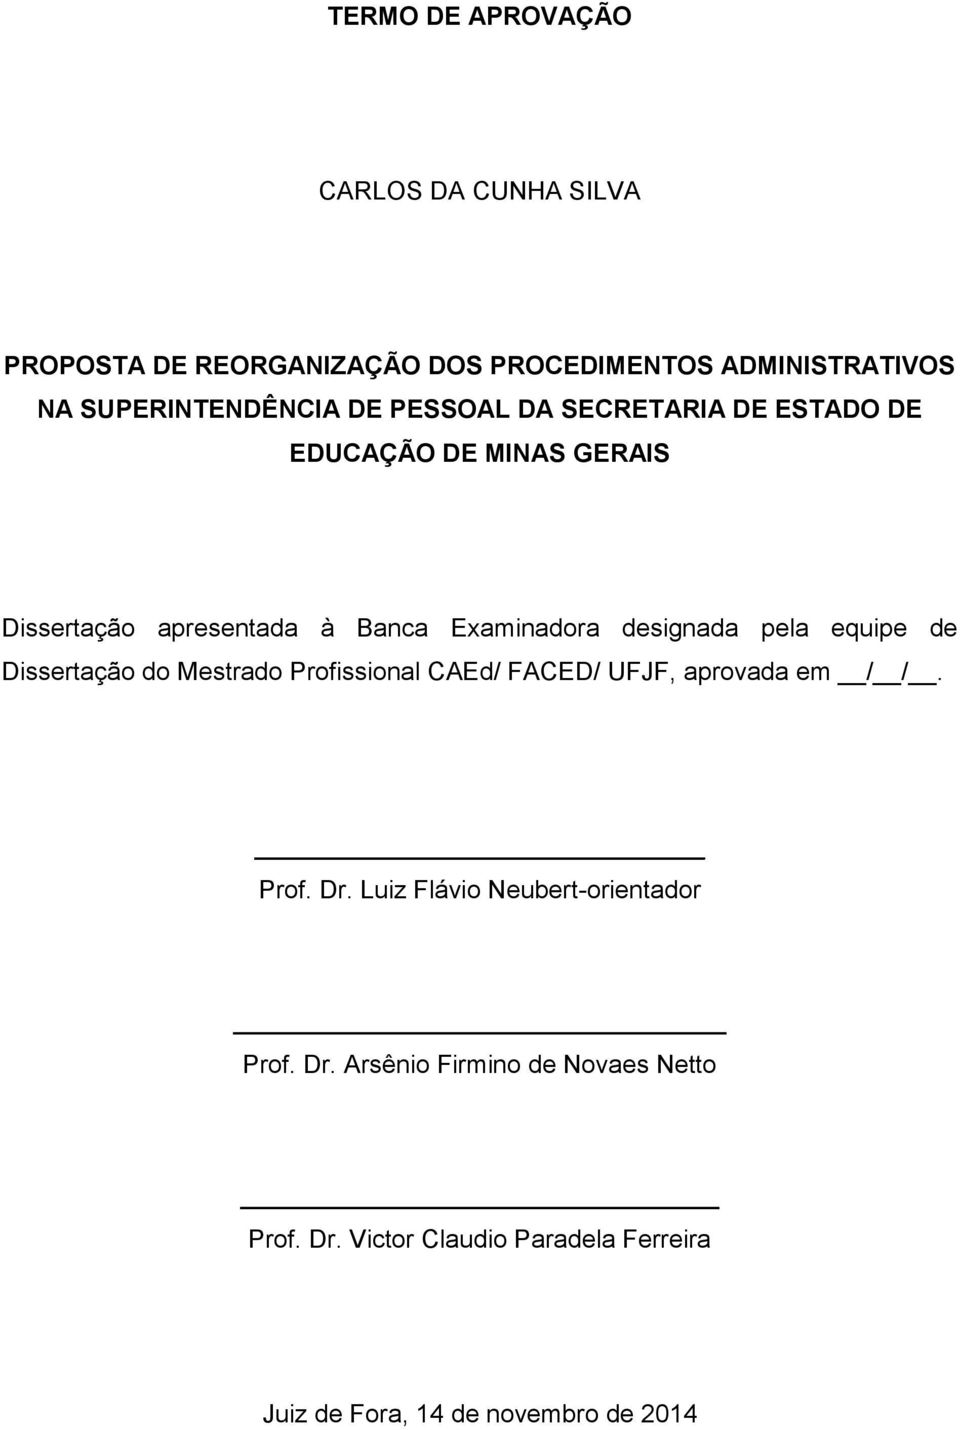 equipe de Dissertação do Mestrado Profissional CAEd/ FACED/ UFJF, aprovada em / /. Prof. Dr.